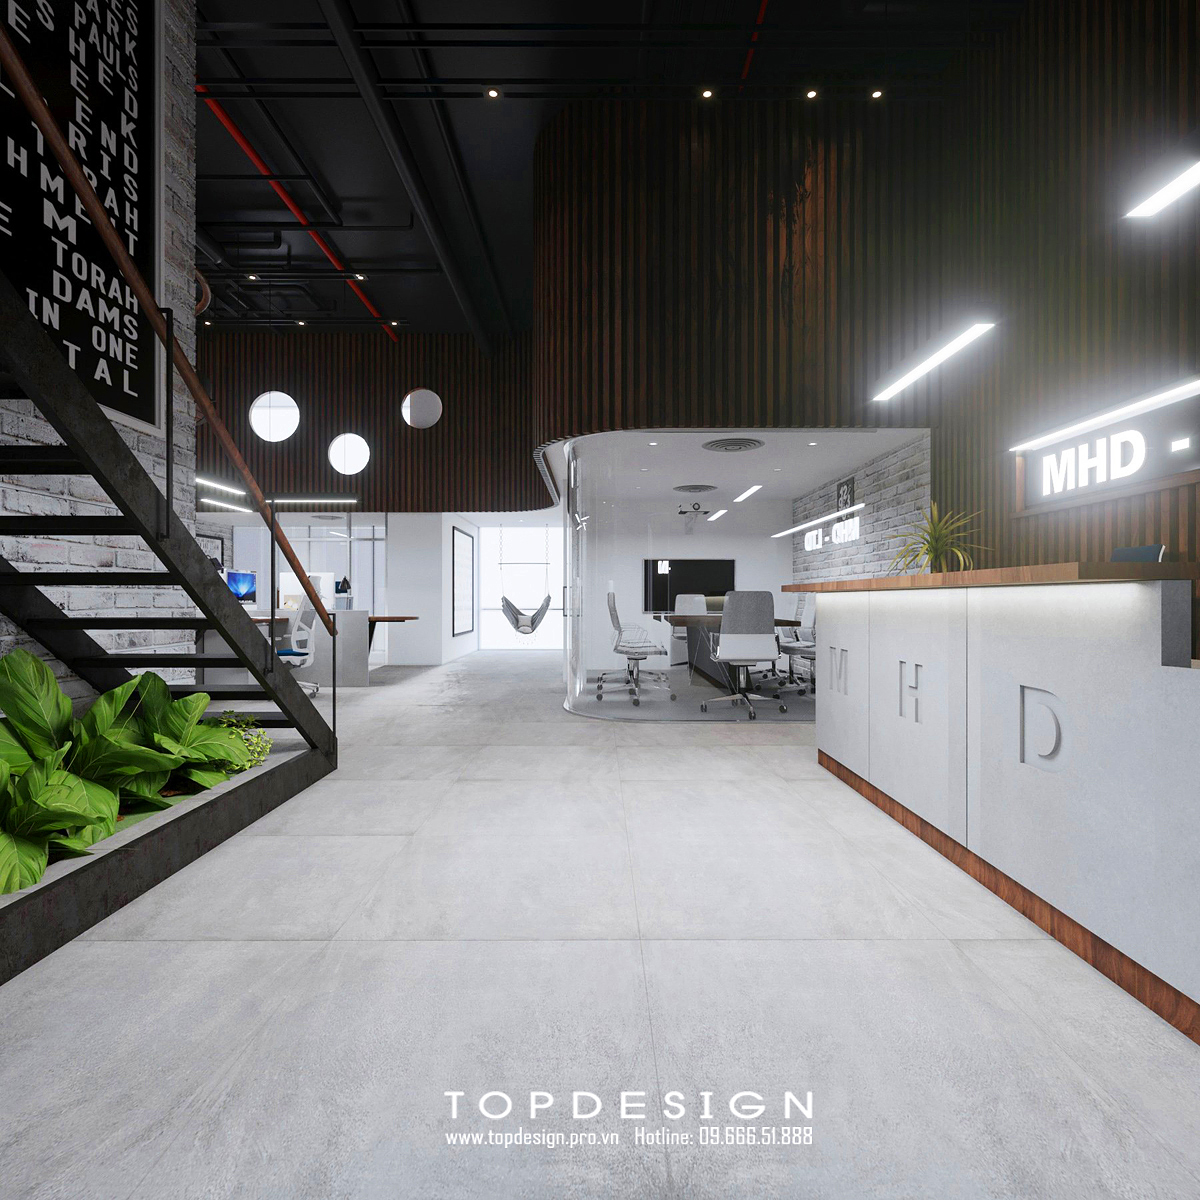 TOPDESIGN_Thiết kế nội thất văn phòng MHD_25